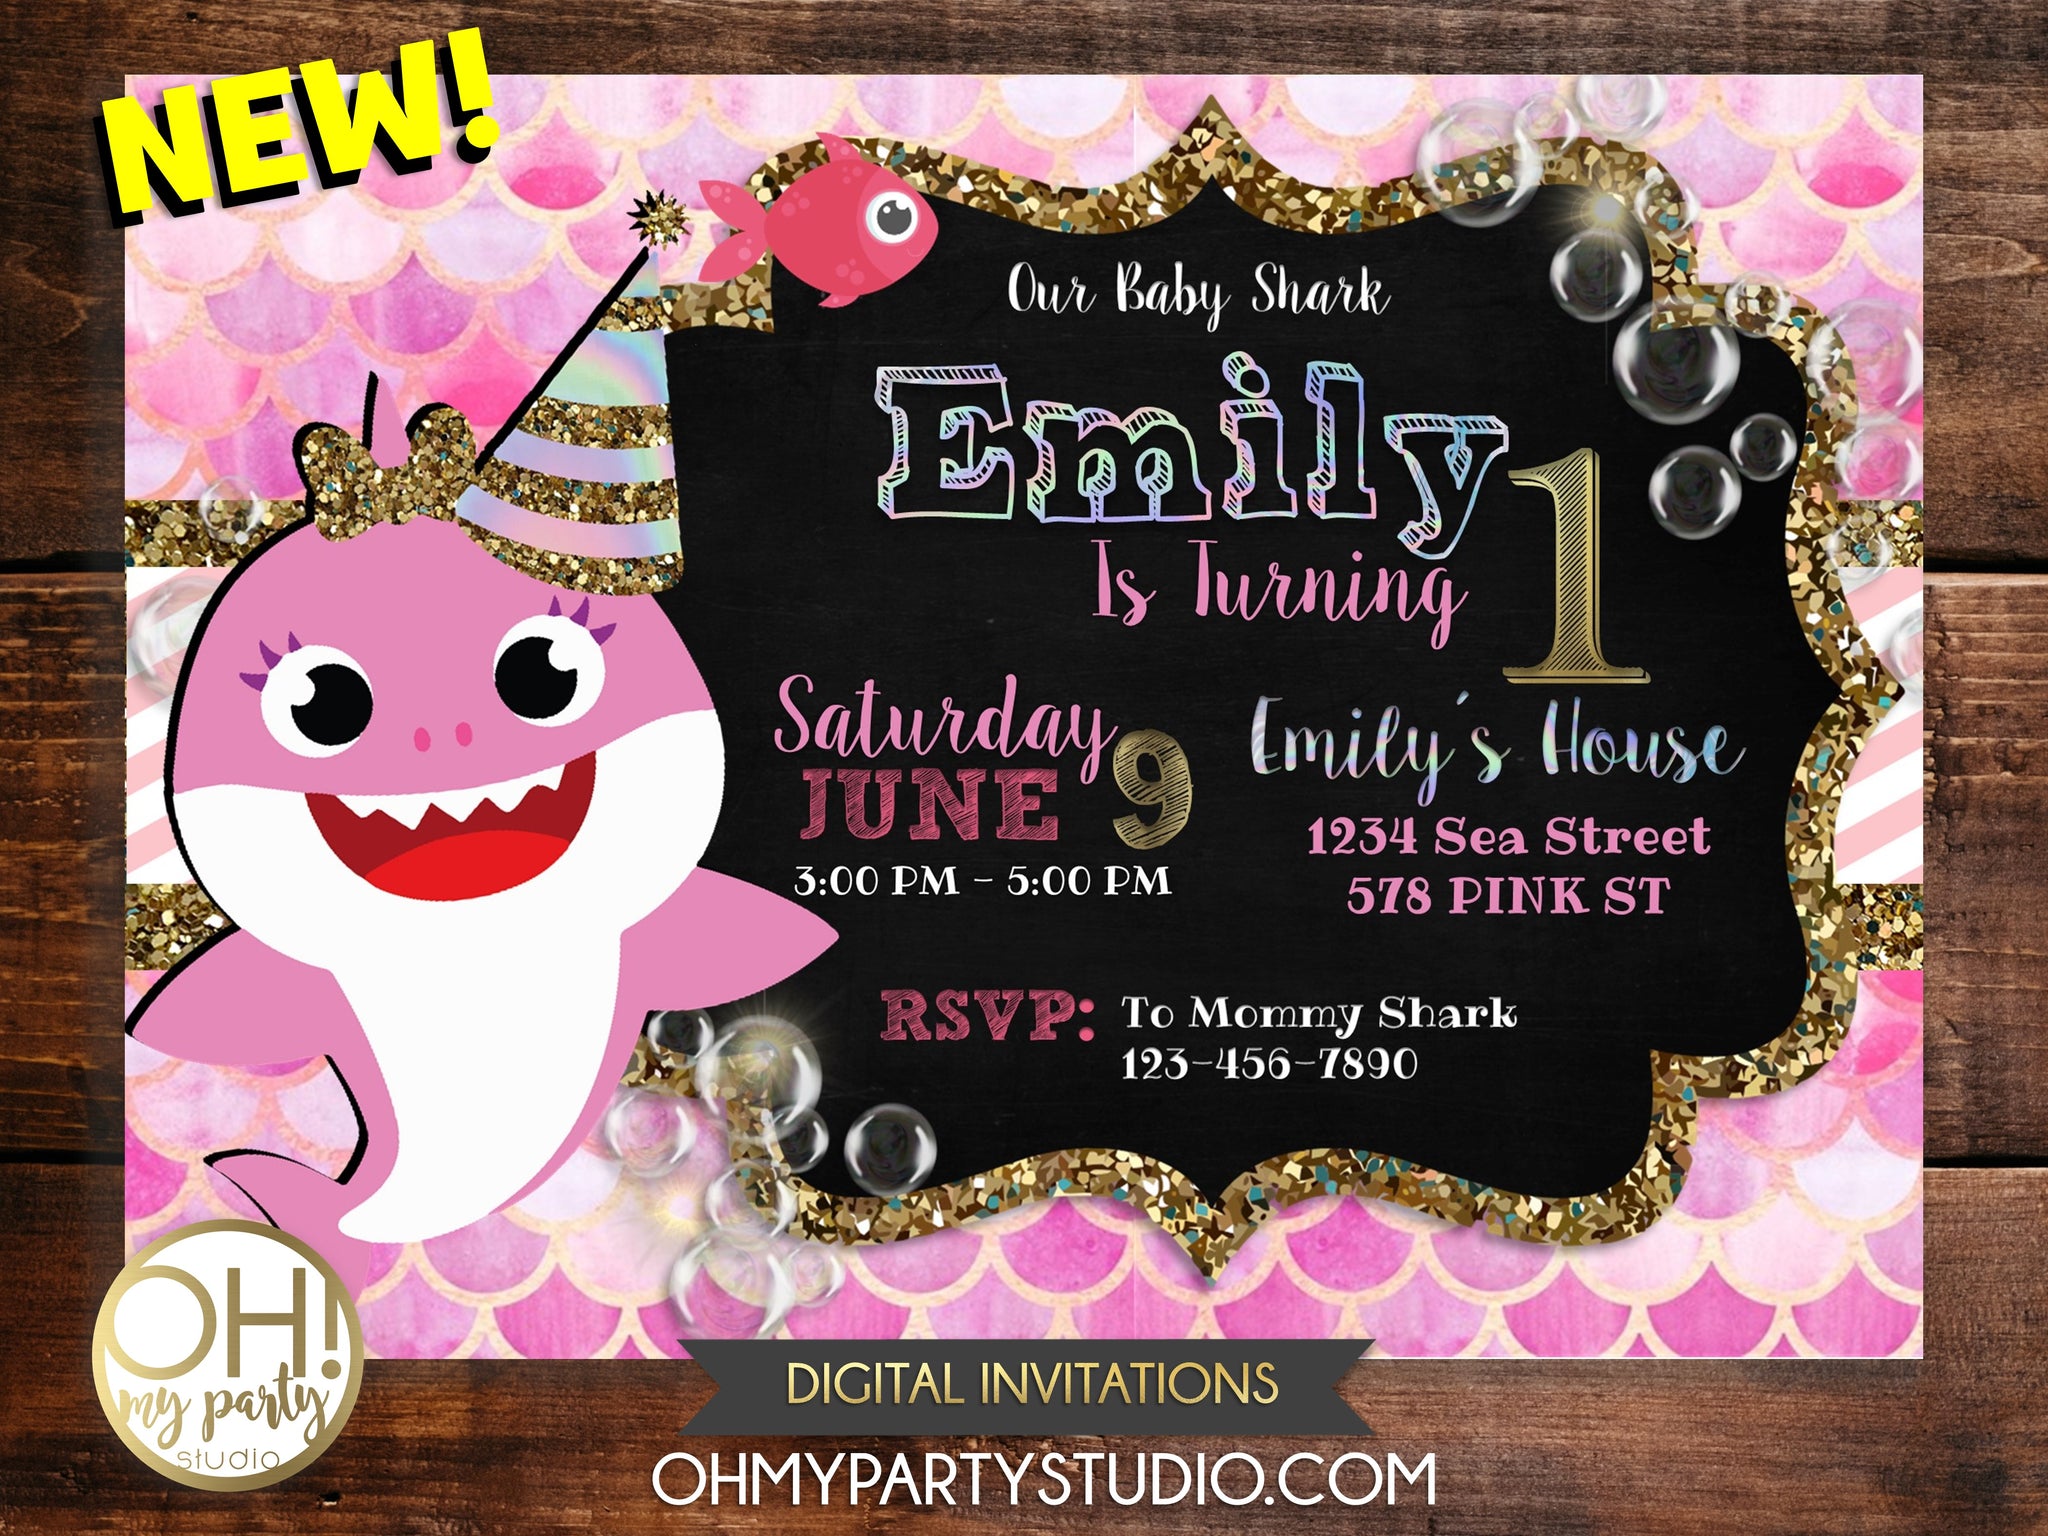 BABY SHARK BIRTHDAY PARTY INVITATION - OH MY PARTY STUDIO